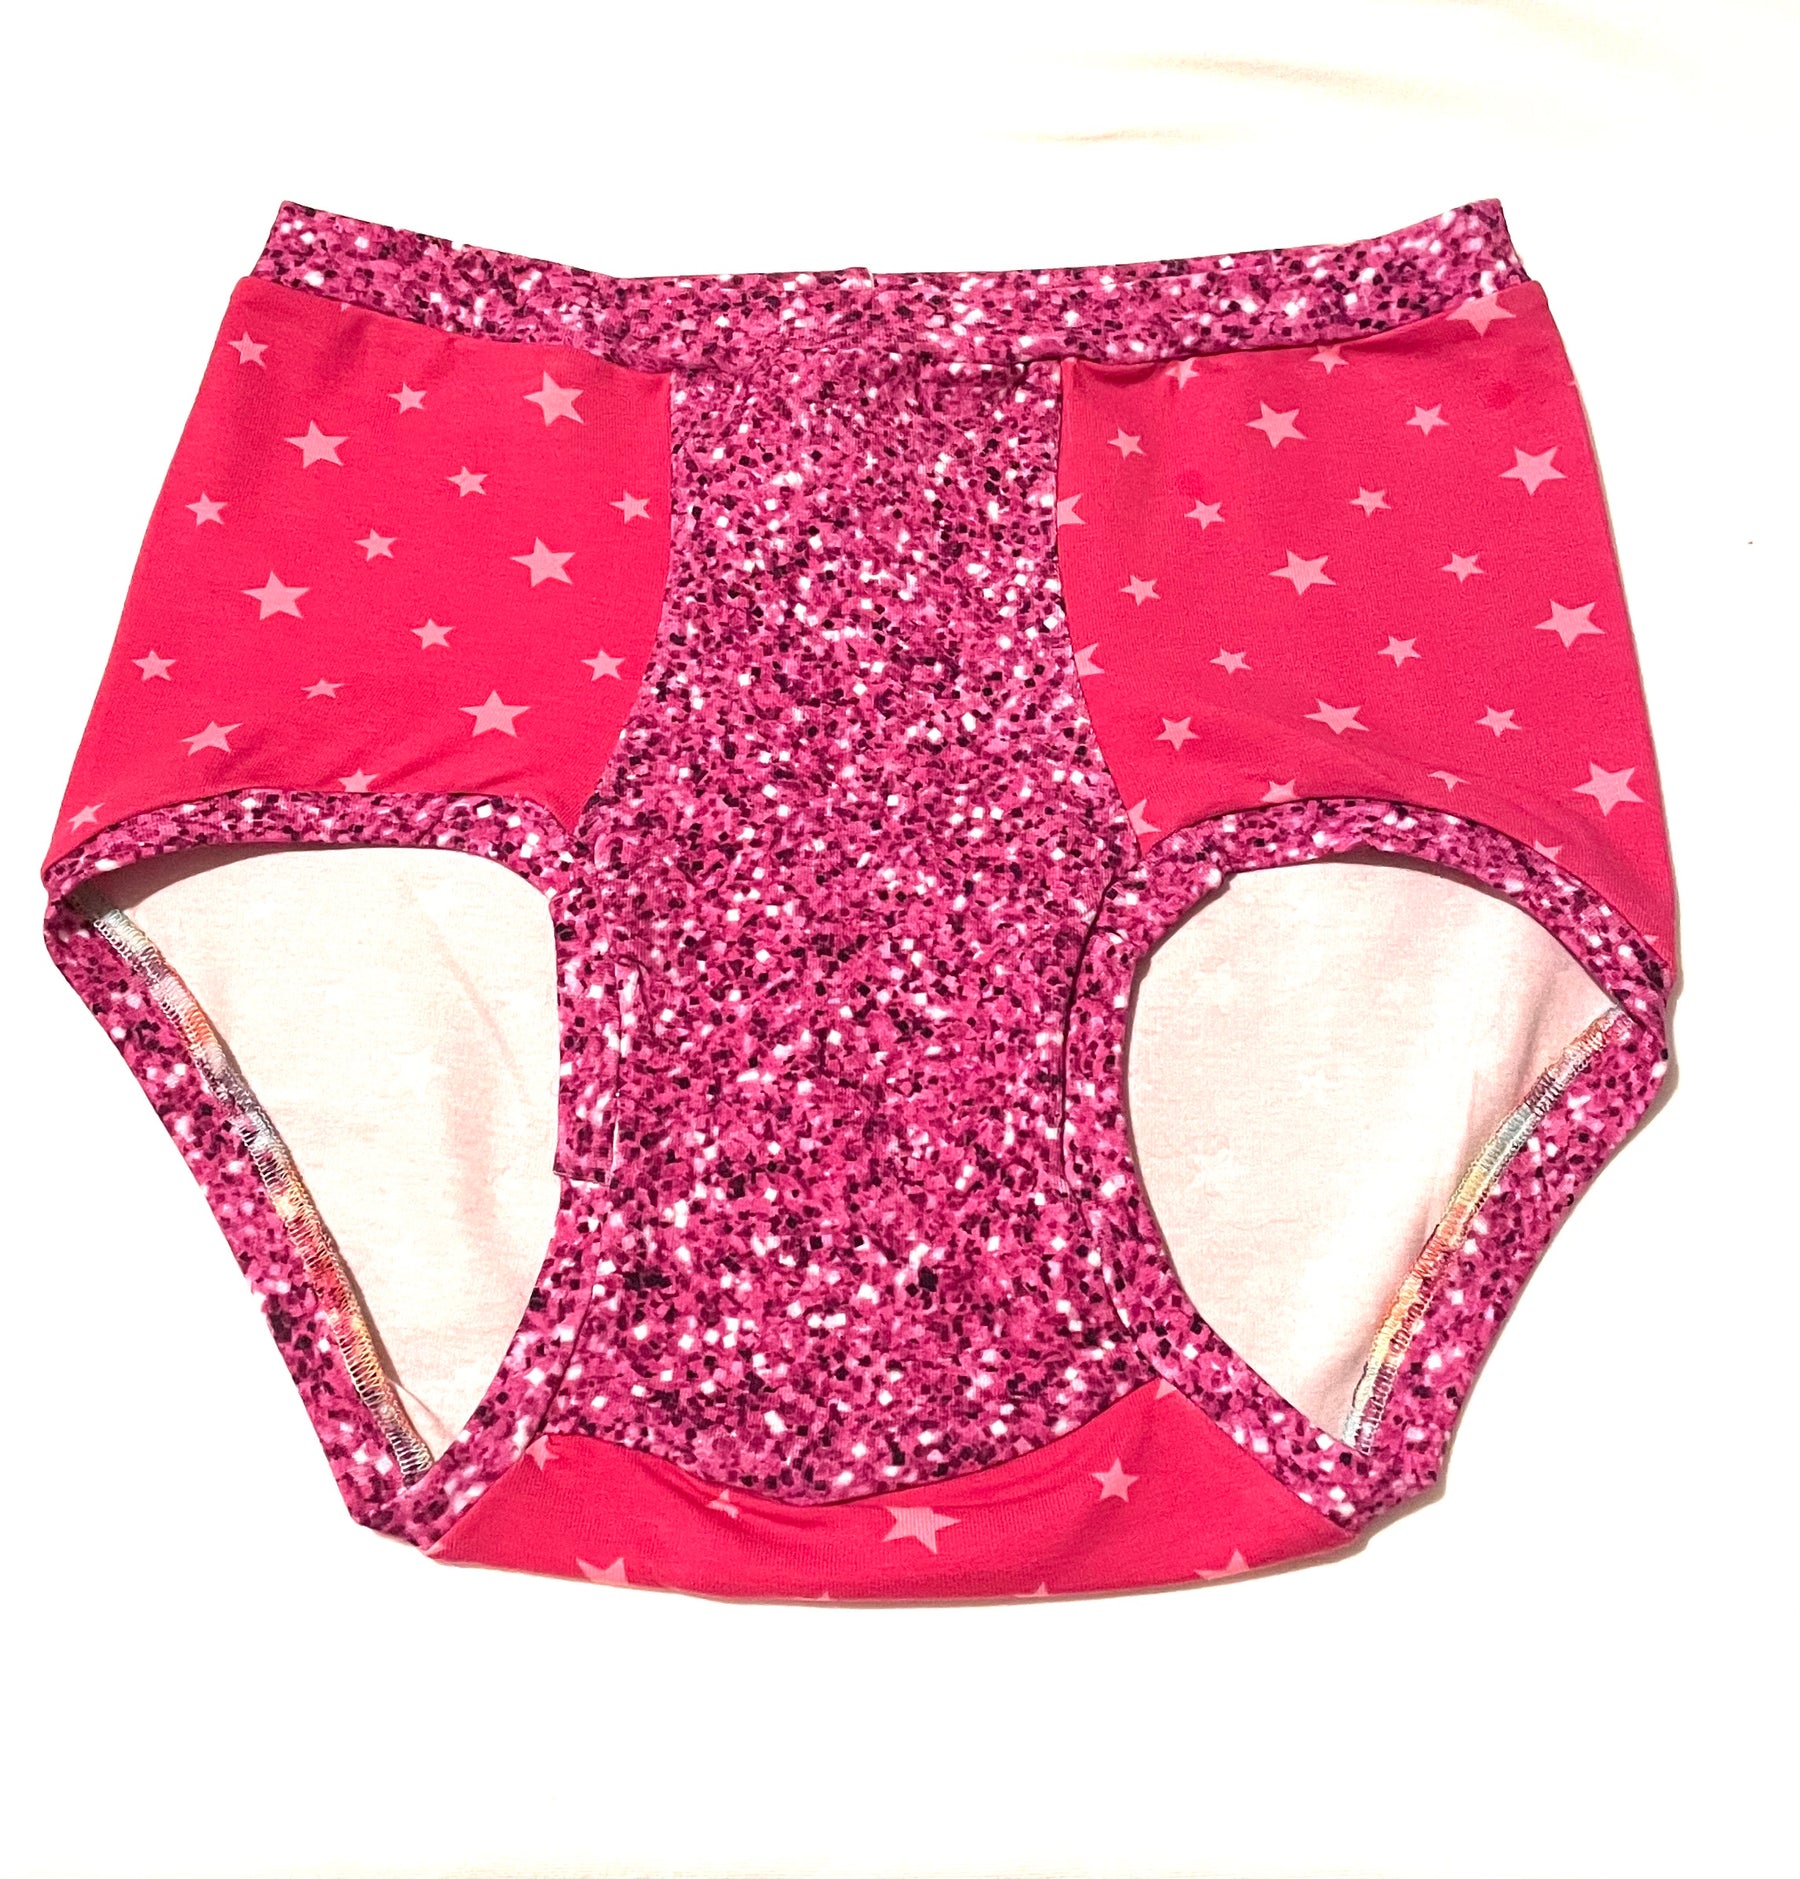 Women's Panties Pattern, Sewing Tutorial, Size XS 5XL, Ruffle